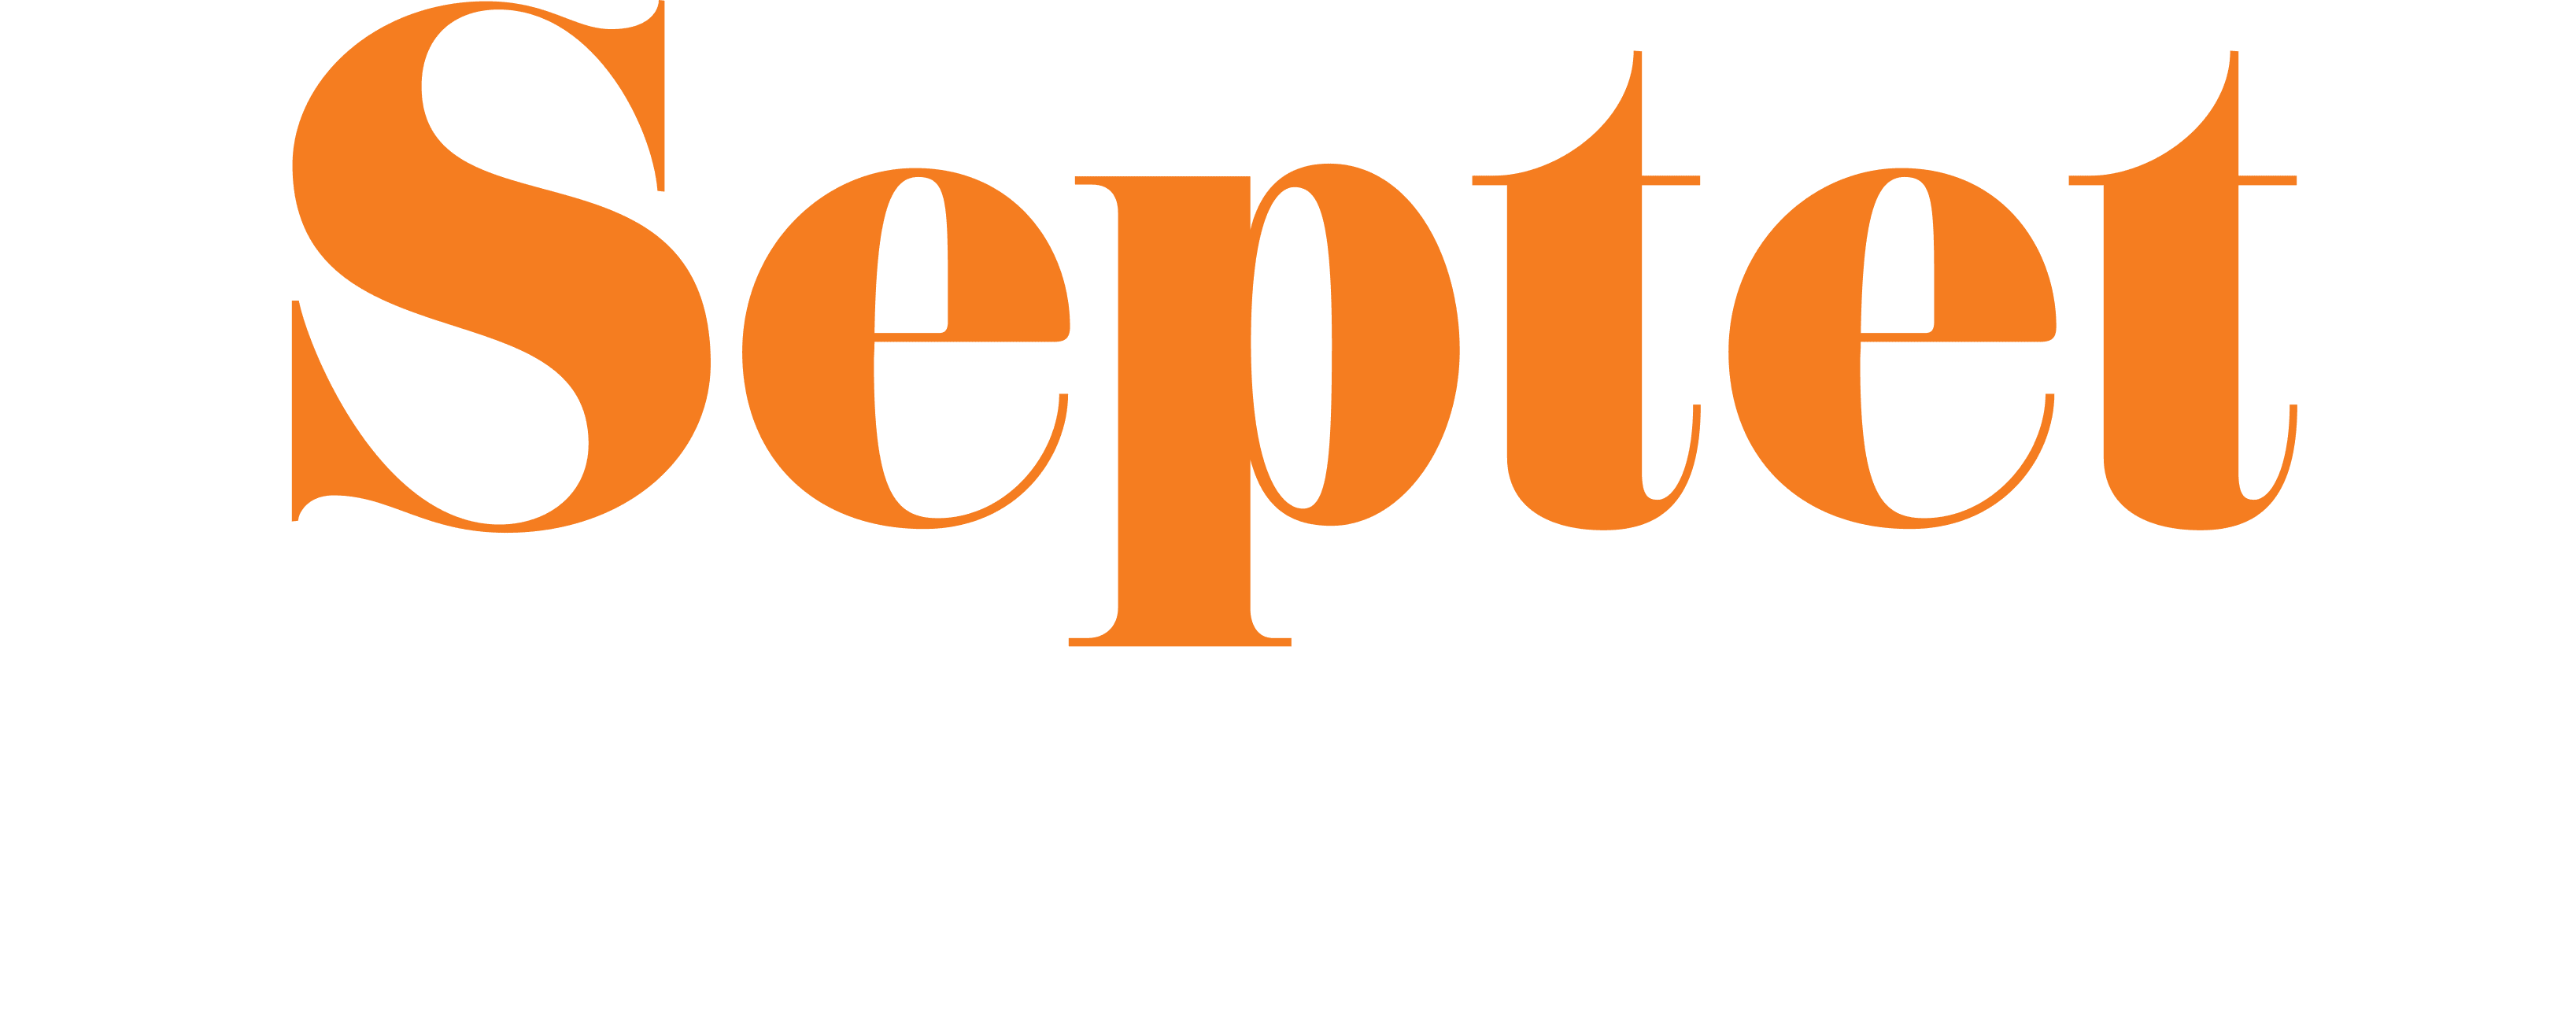 Septet: The Story of Hong Kong logo